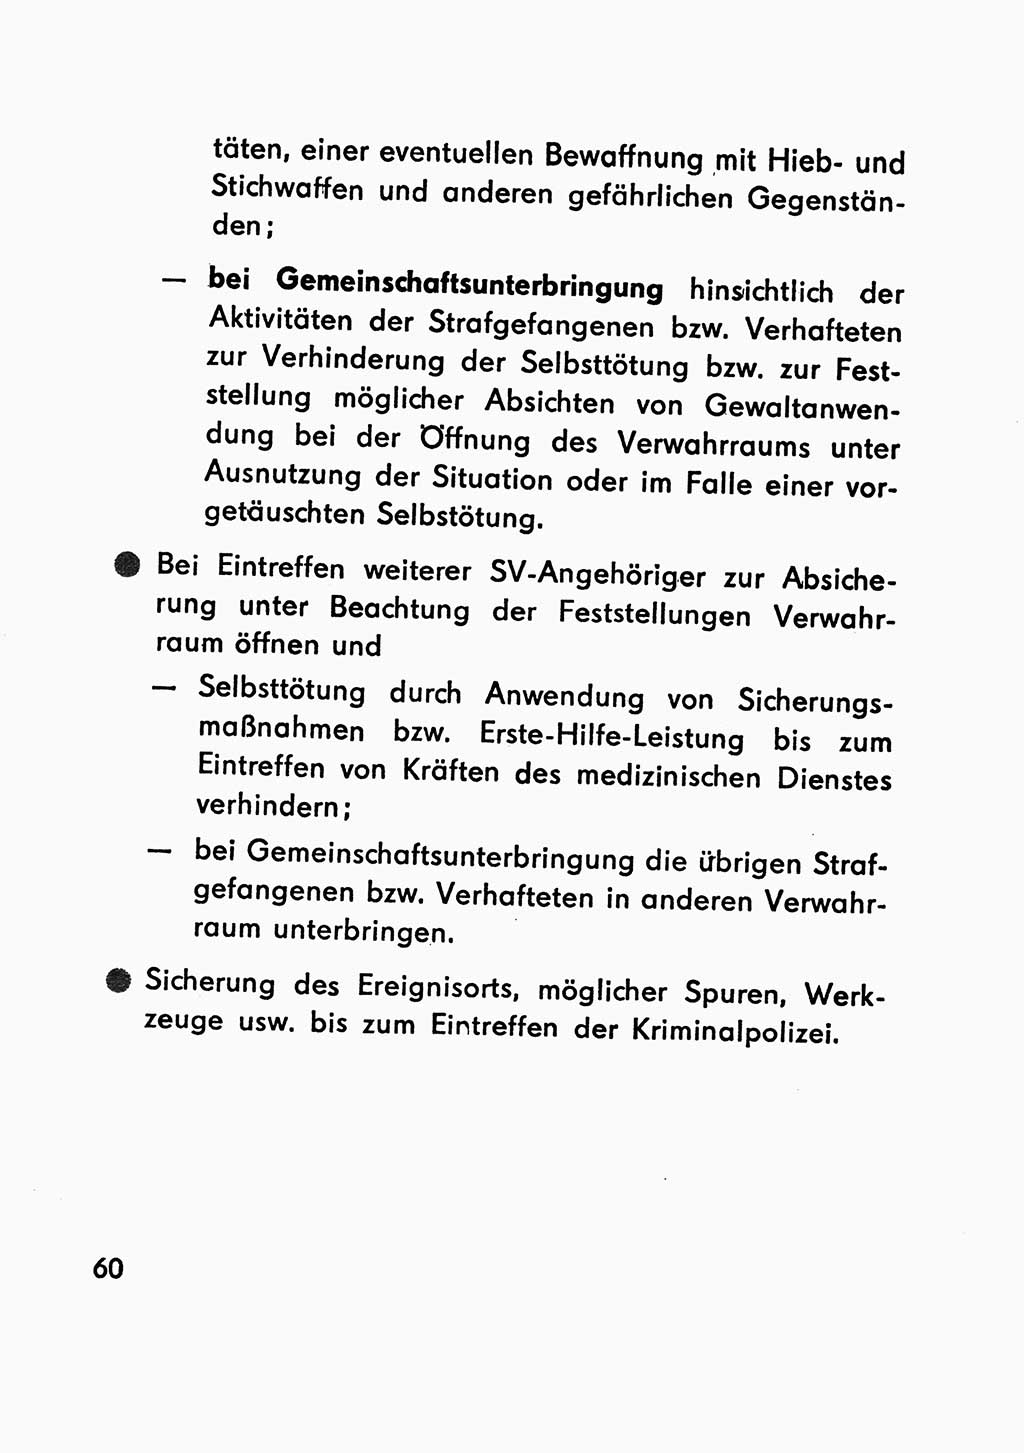 Merkbuch für SV-Angehörige [Strafvollzug (SV) Deutsche Demokratische Republik (DDR)] 1975, Seite 60 (SV-Angeh. DDR 1975, S. 60)